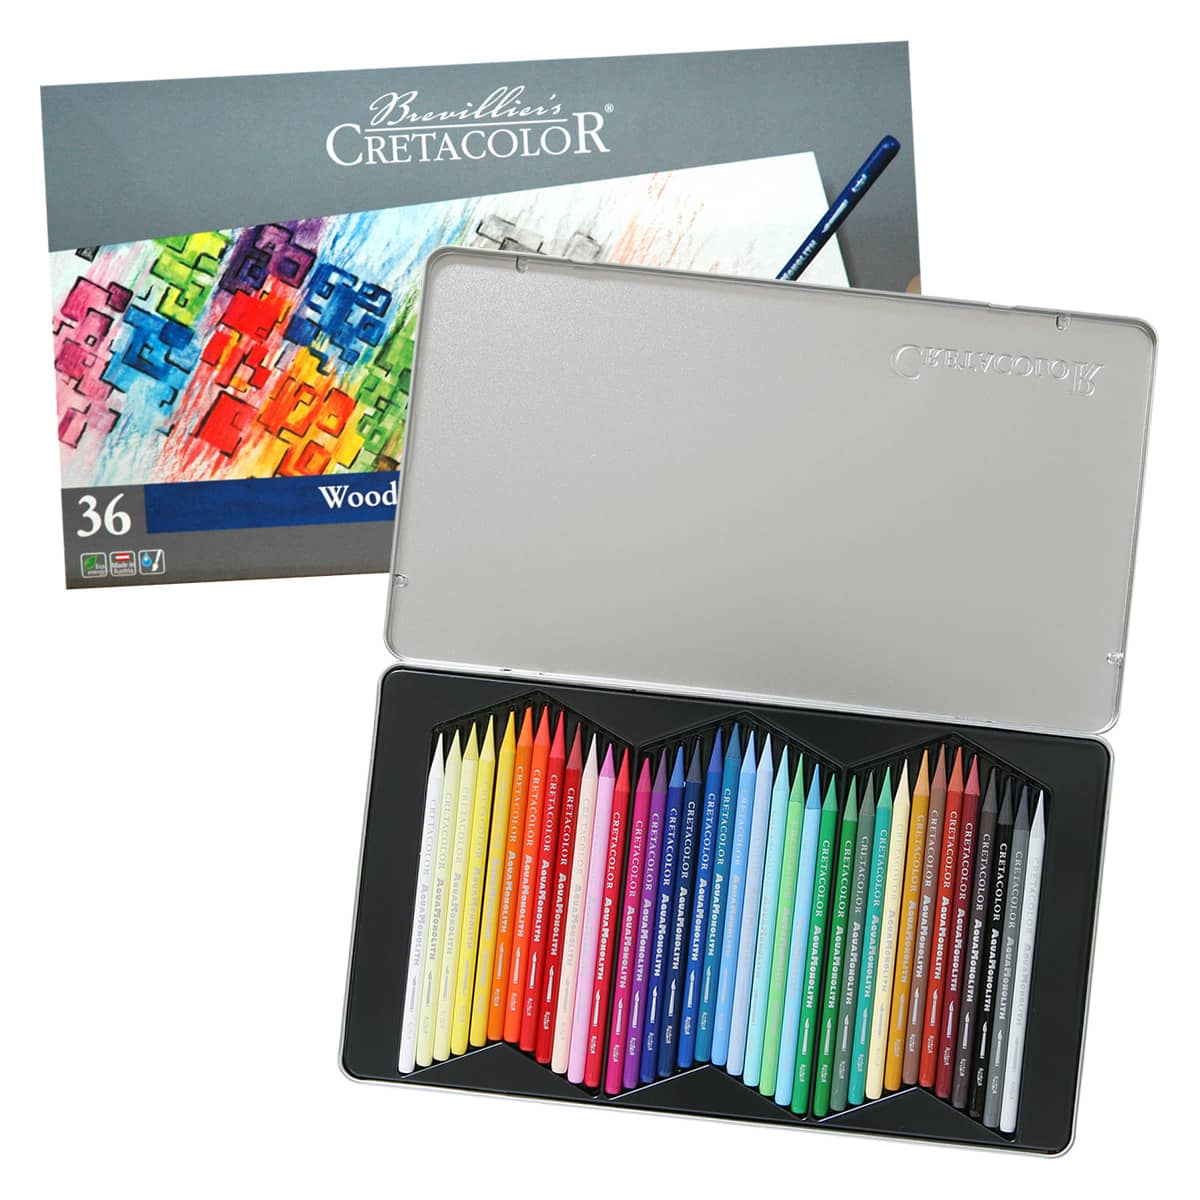 https://www.jerrysartarama.com/media/catalog/product/s/e/set-of-36-cretacolor-aquamonolith-colored-pencil-sets-ls-53820.jpg